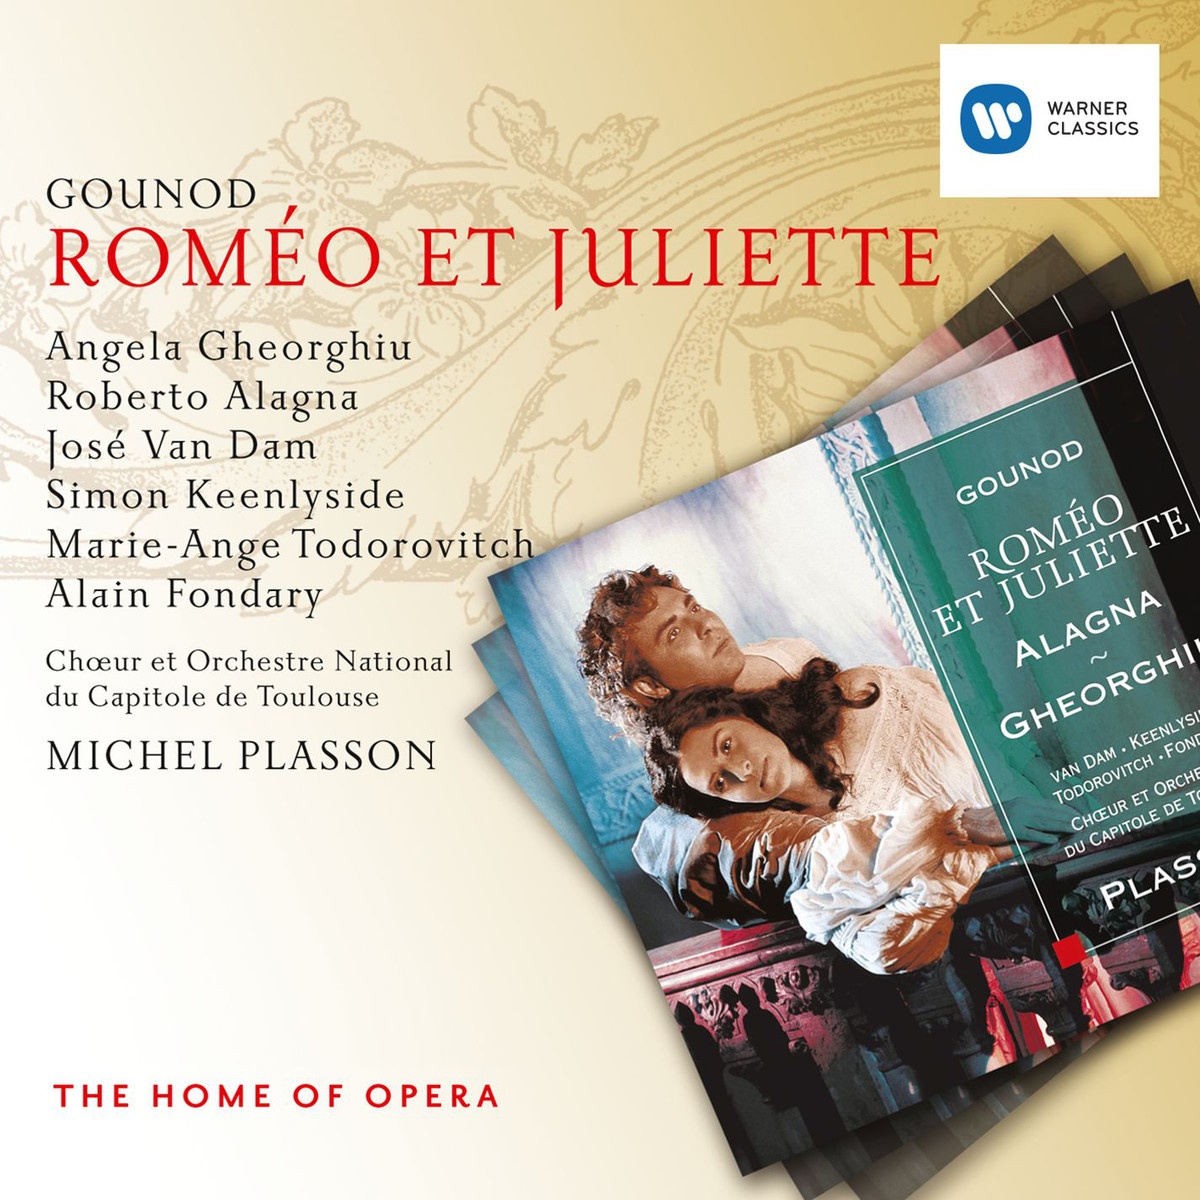 Rome o et Juliette, ACT IV: VI. Danse Bohe mienne Orchestre